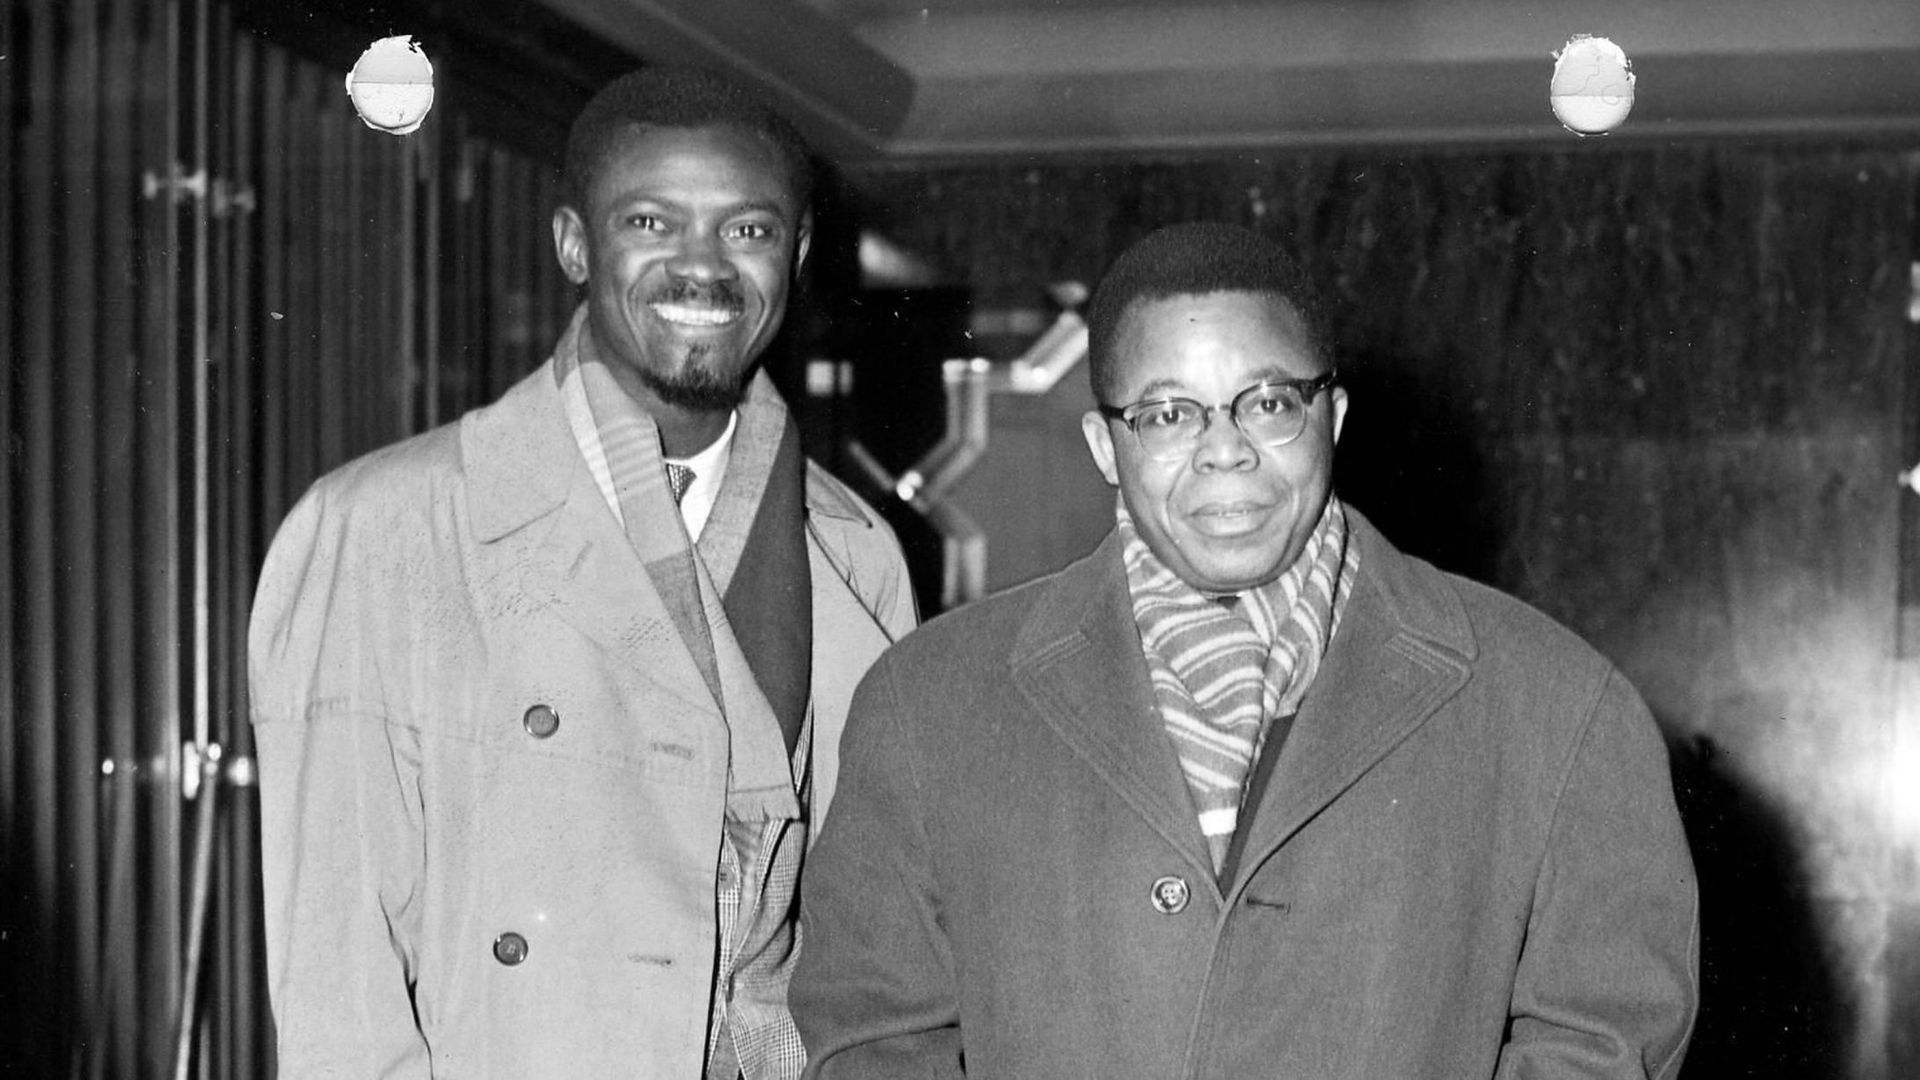 Le 10 février 1960, Joseph Kasa-Vubu (à droite) revient à la Table ronde dont il avait claqué la porte et rejoint Patrice Lumumba (à gauche).